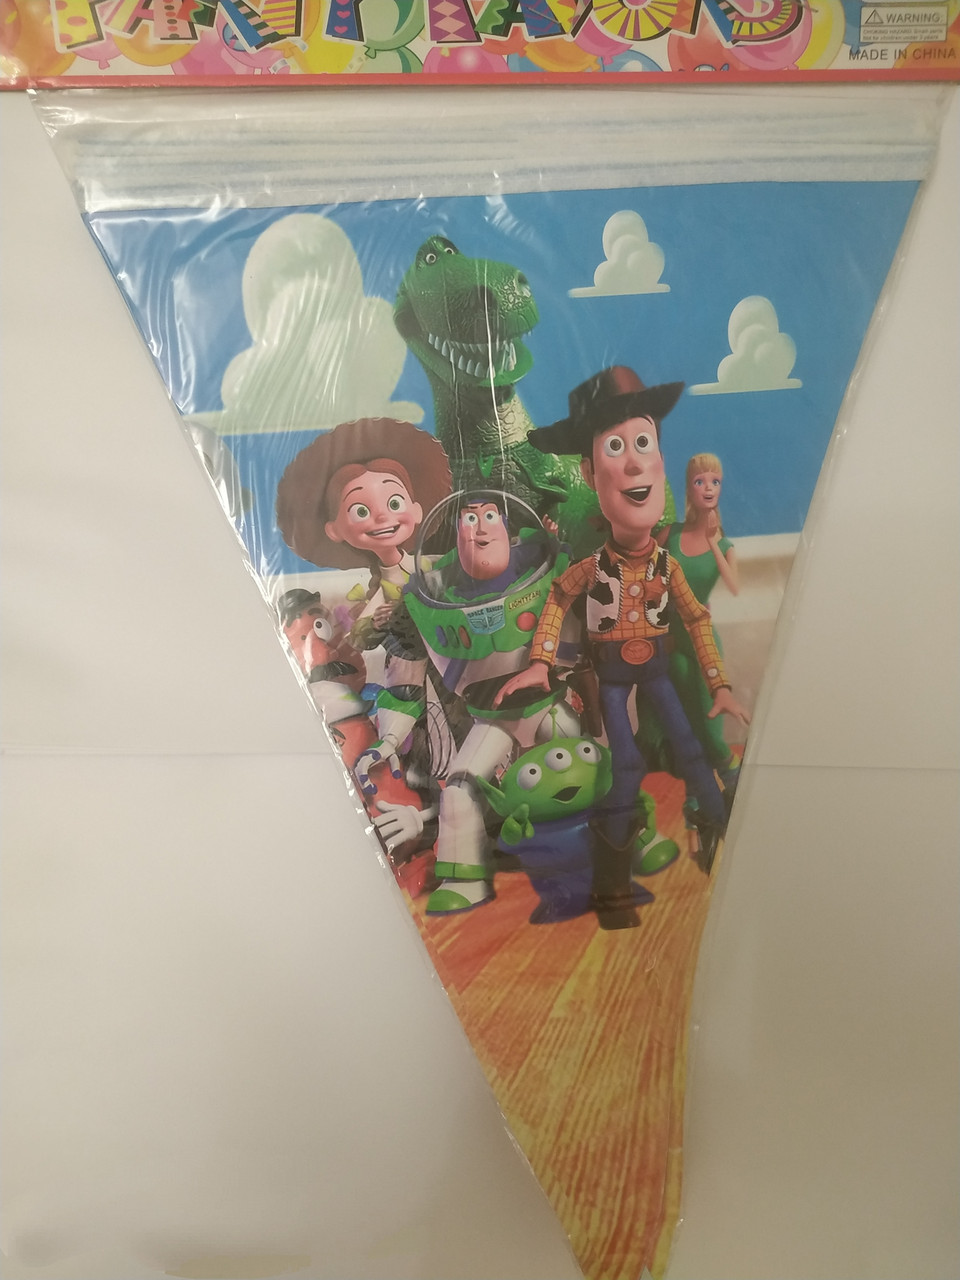 Універсальна гірлянда — прапорці вимпел із героями мультфільмів " Історія іграшок ( Toy Story) ".